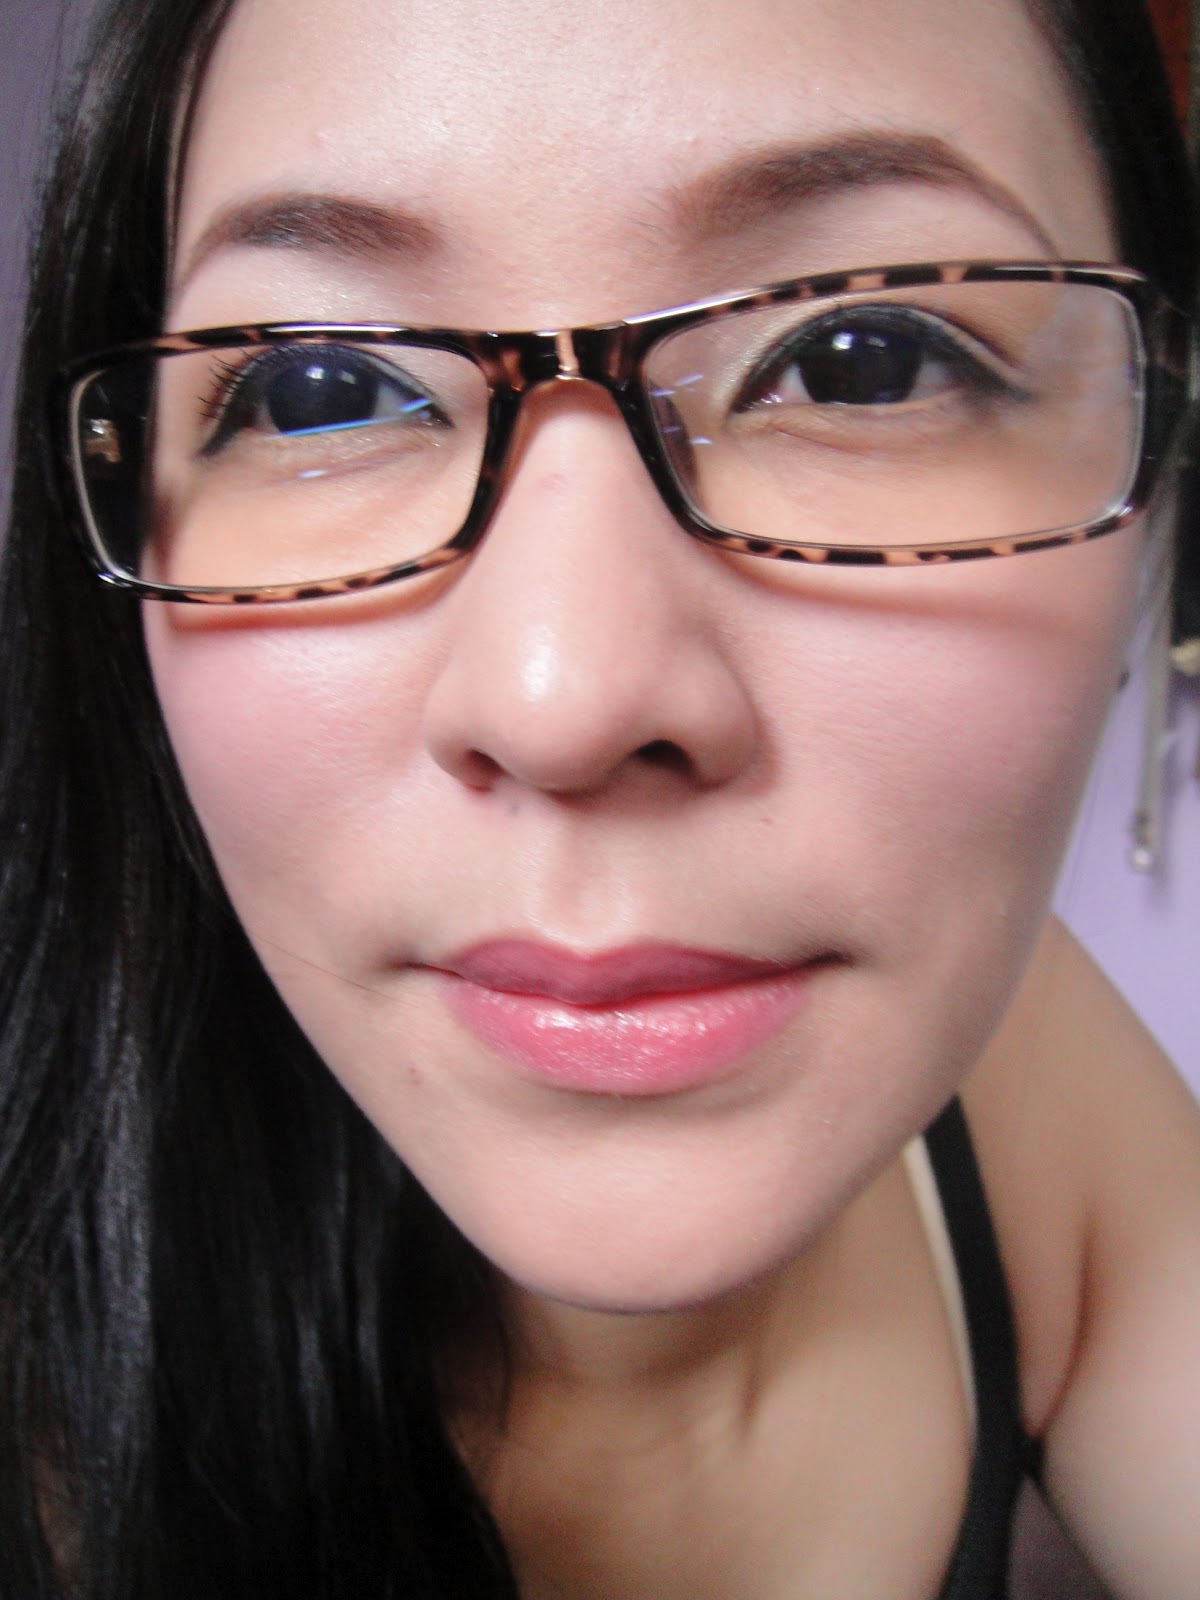 Video Tutorial Makeup With Eyeglasses On Vanity And Everything In Between